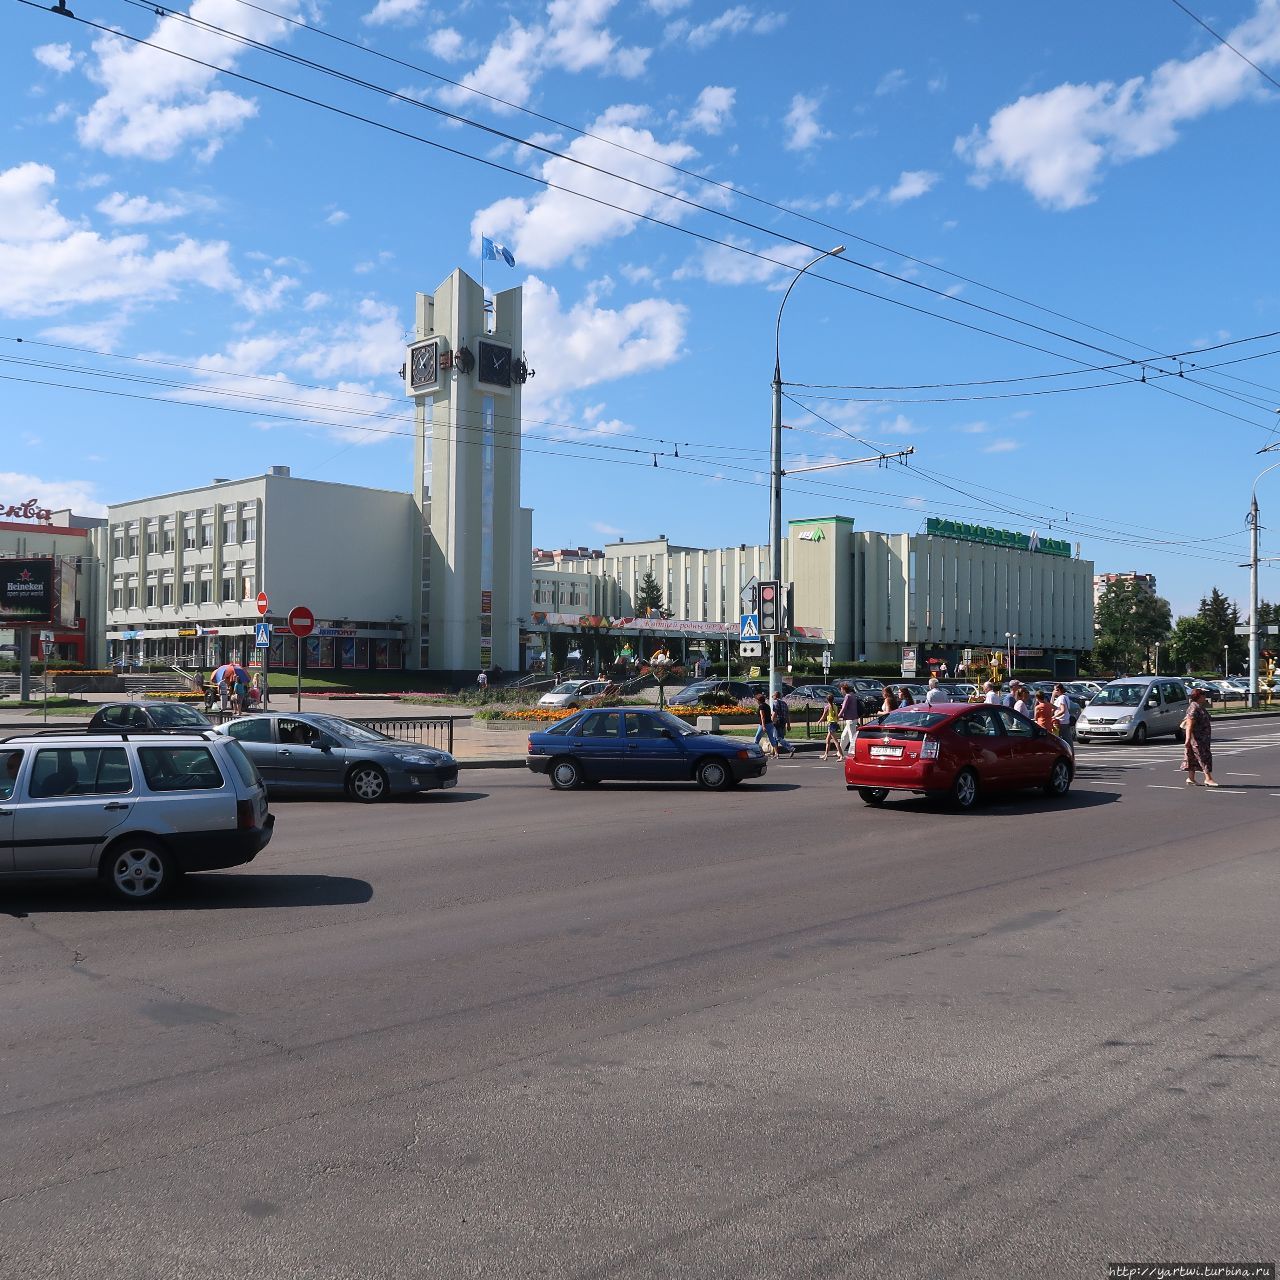 Но мы продолжаем свой путь по Советской улице через проспект Машерова к набережной реки Мухавец. Брест, Беларусь